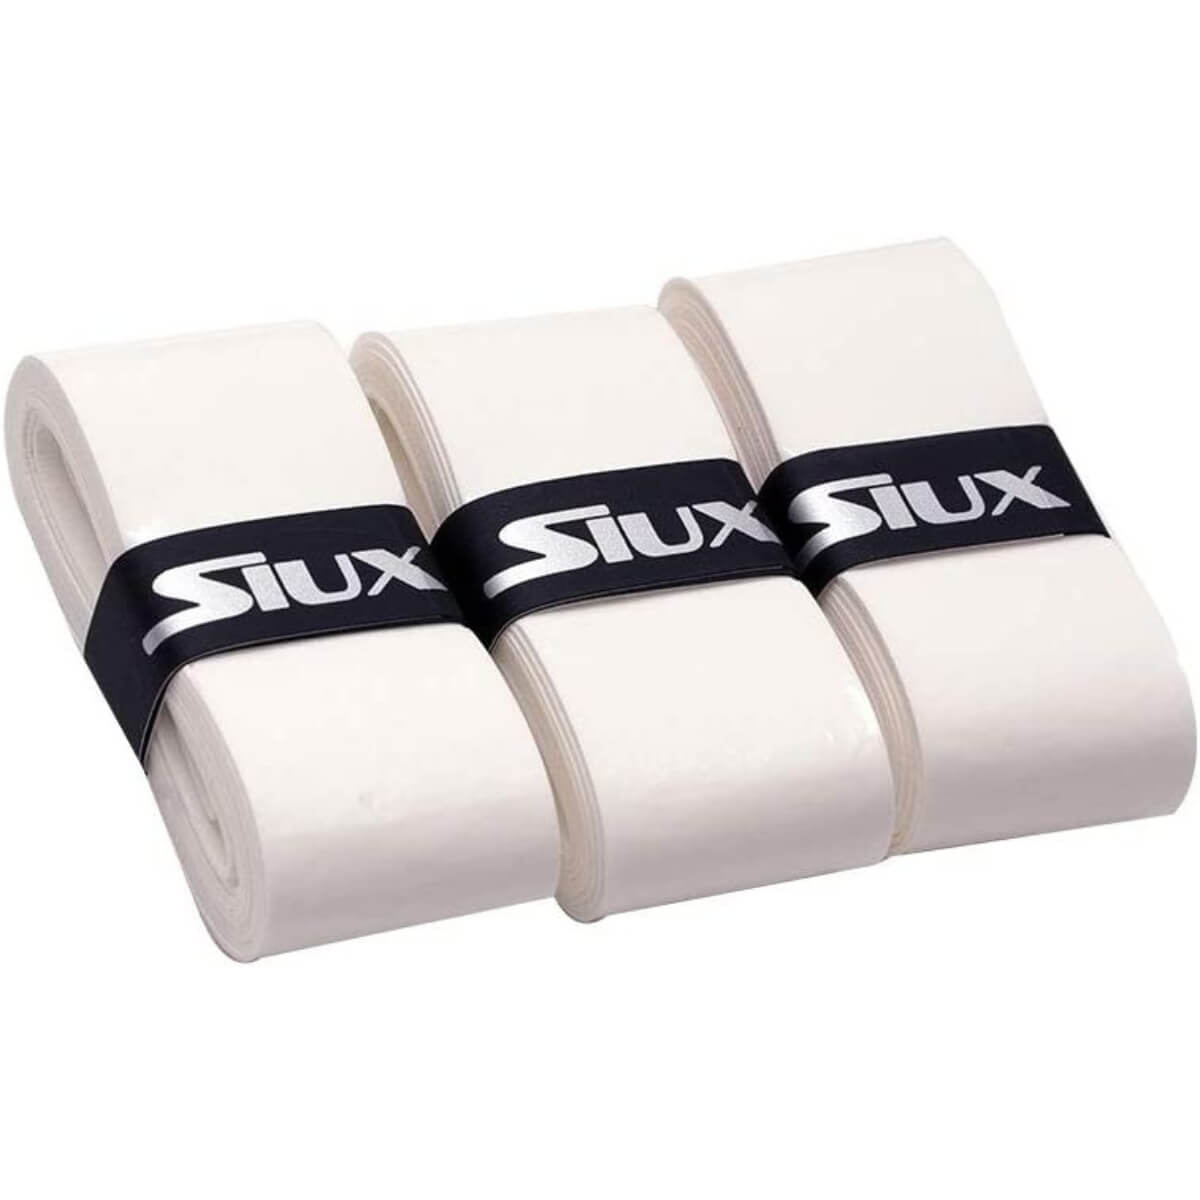 Siux Pro Overgrip Comfort 3 stuks